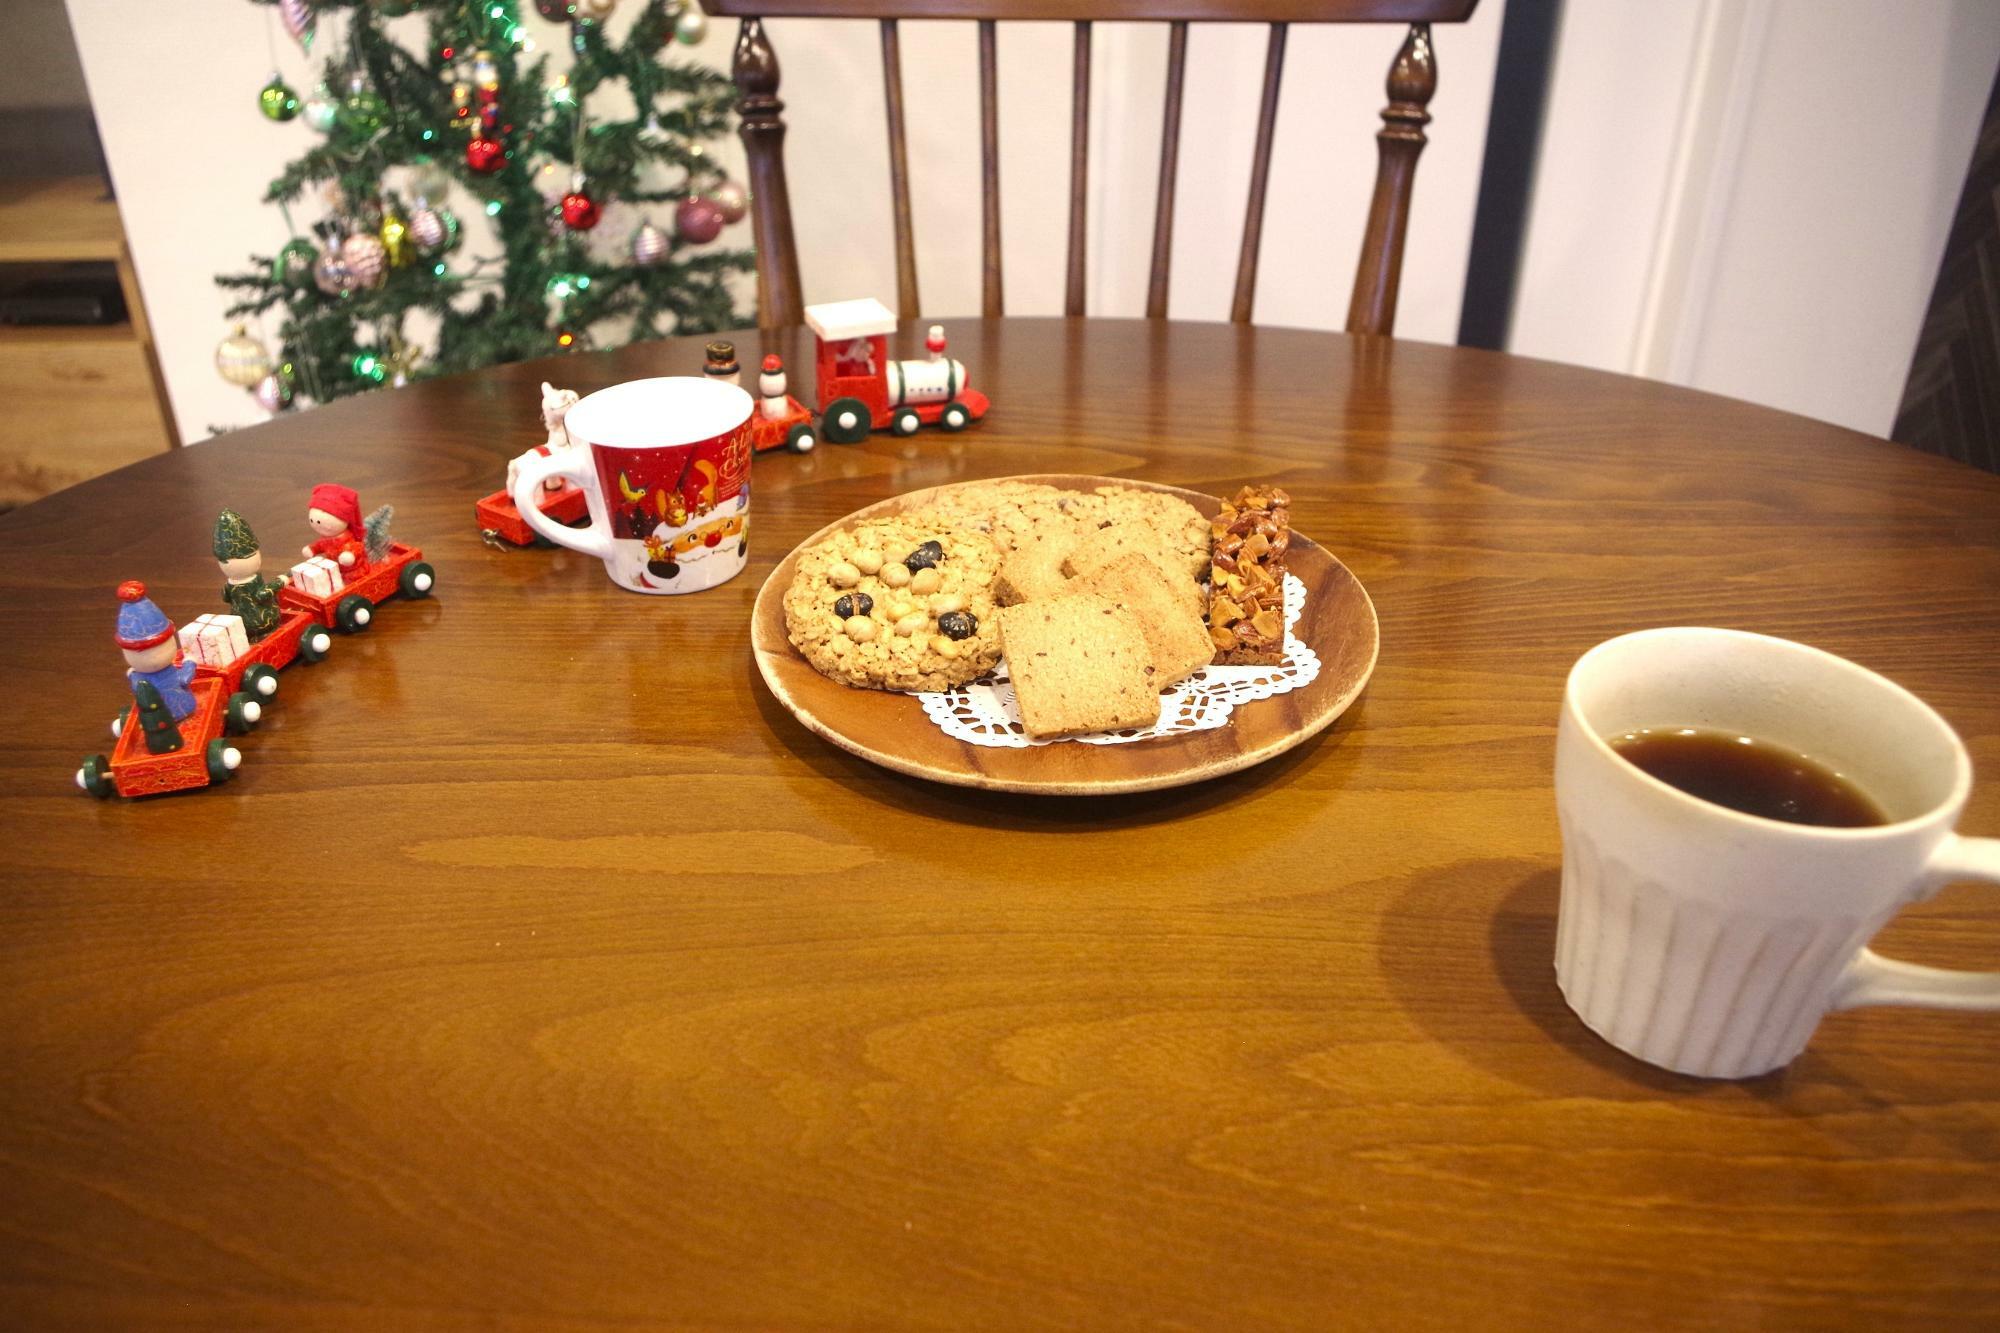 素朴な素材の焼き菓子がテーブルの上にあるだけで、なんだか部屋が暖かい雰囲気に